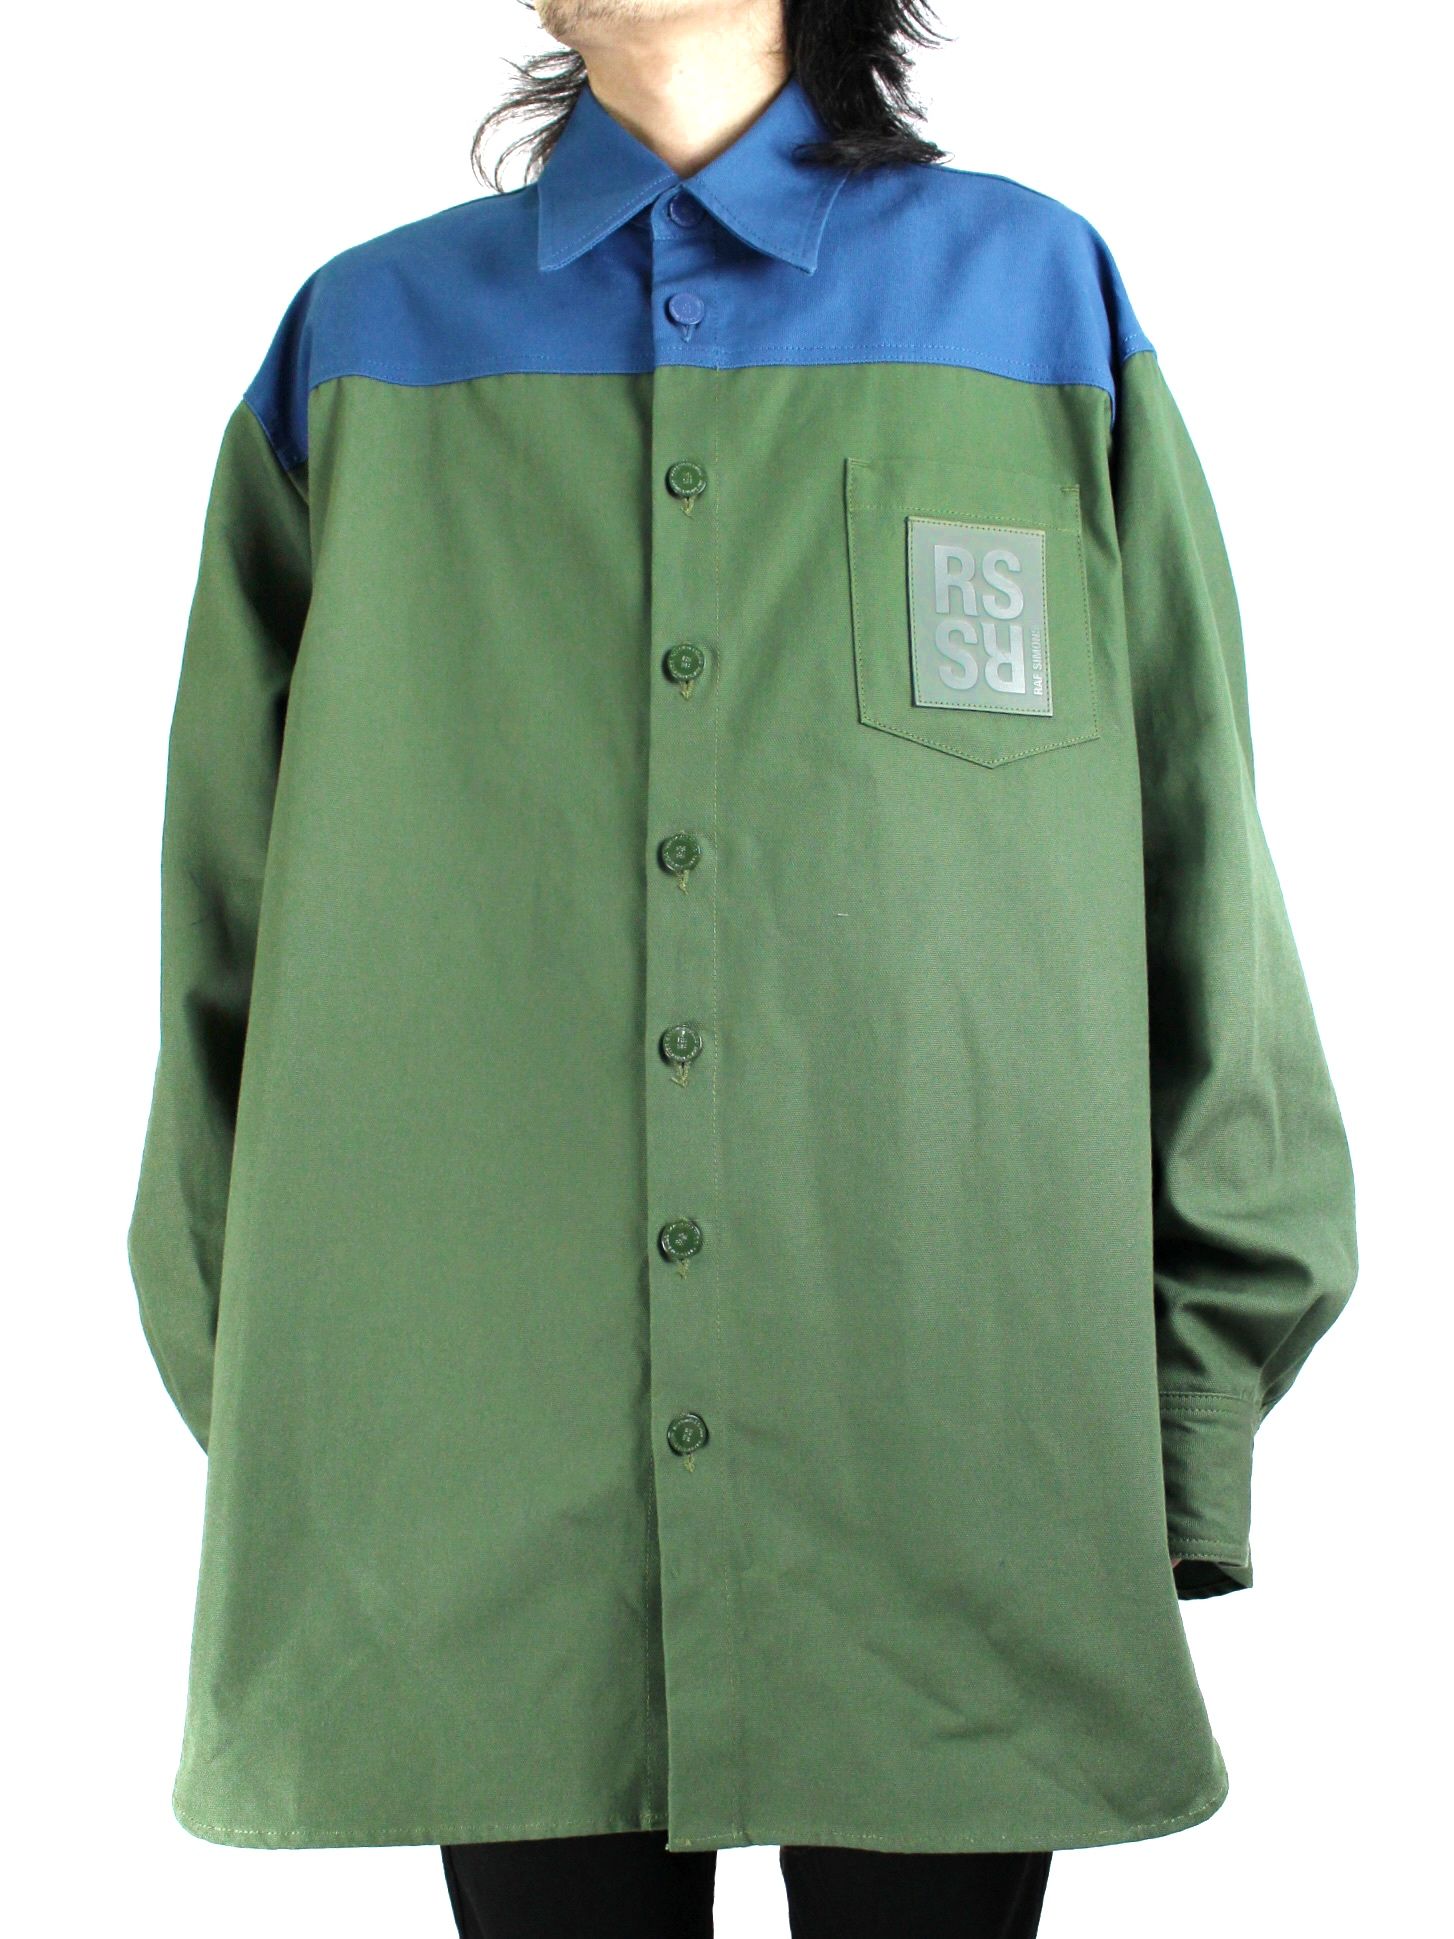 ラフシモンズ 22AW 222-M244 Oversized bicolor denim shirts with R pin in back バイカラーオーバーサイズデニム長袖シャツ  メンズ XS